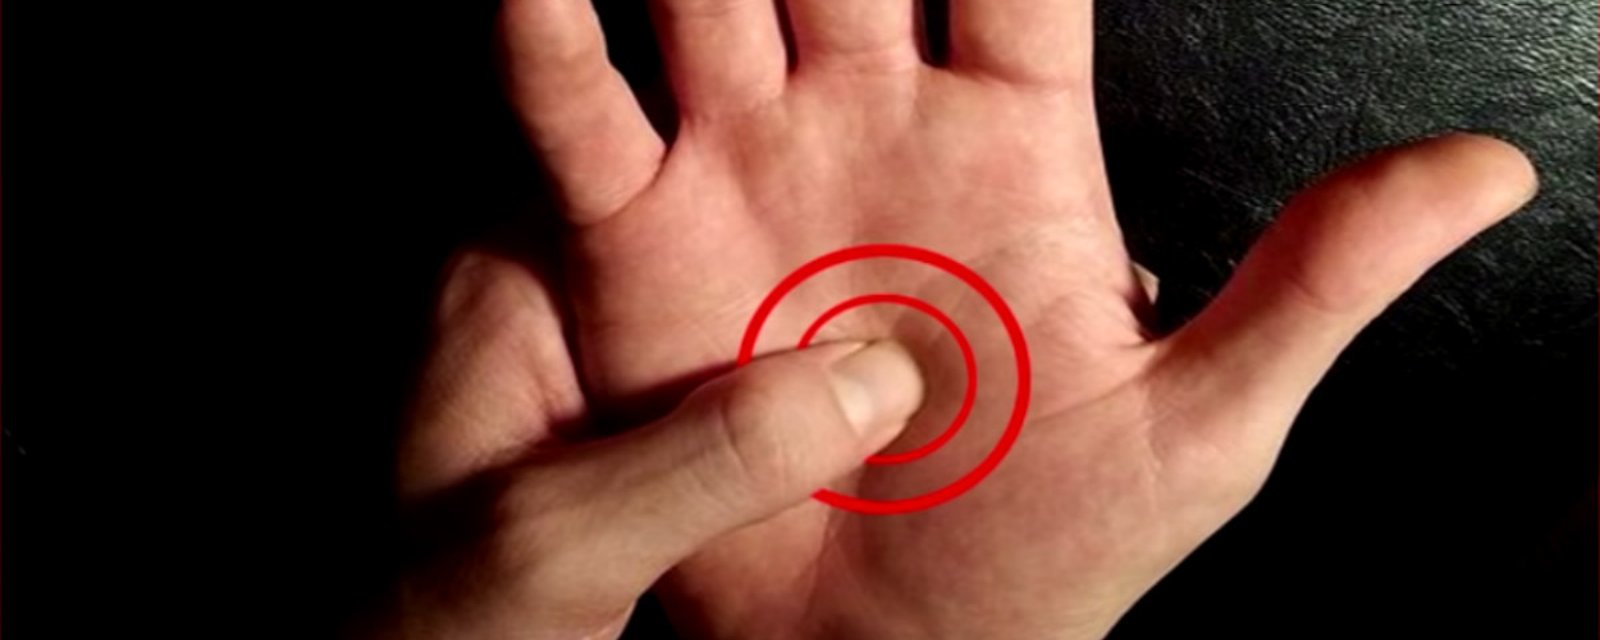 Voyez ce qui arrive à votre corps si vous appuyez dans la paume de votre main durant 1 minute!